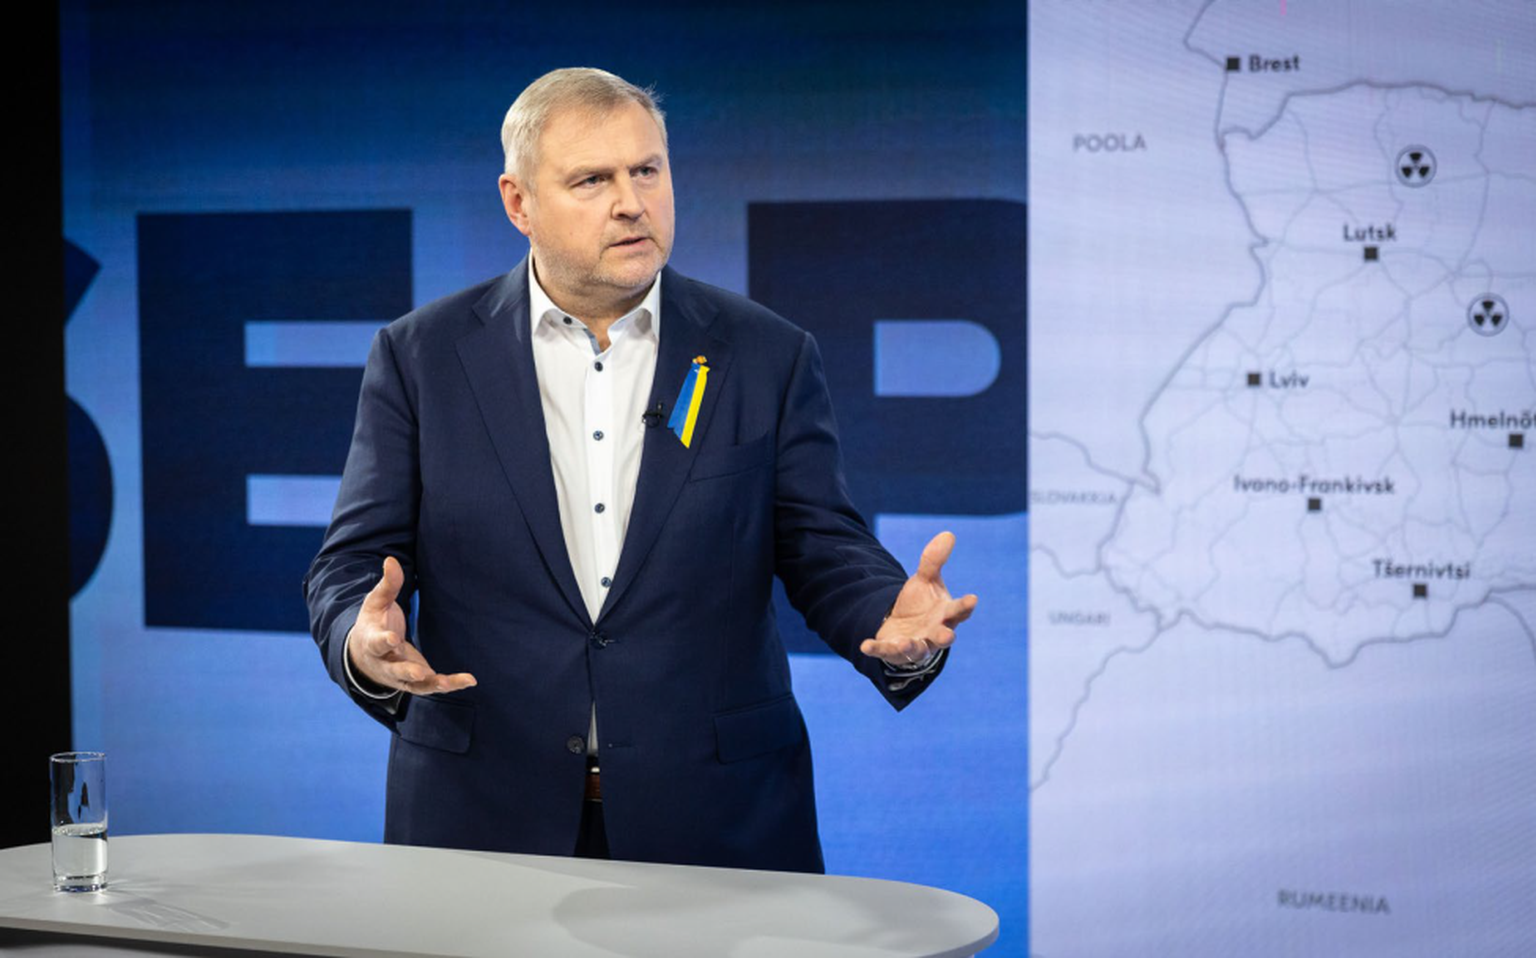 Euroopa Parlamendi ja Ukraina raada ühisdelegatsiooni kuuluva Riho Terrase sõnul on raudtee roll kõige suurem enne kriisi, kui on vaja kiiresti suuremahuliselt rasket tehnikat liigutada.